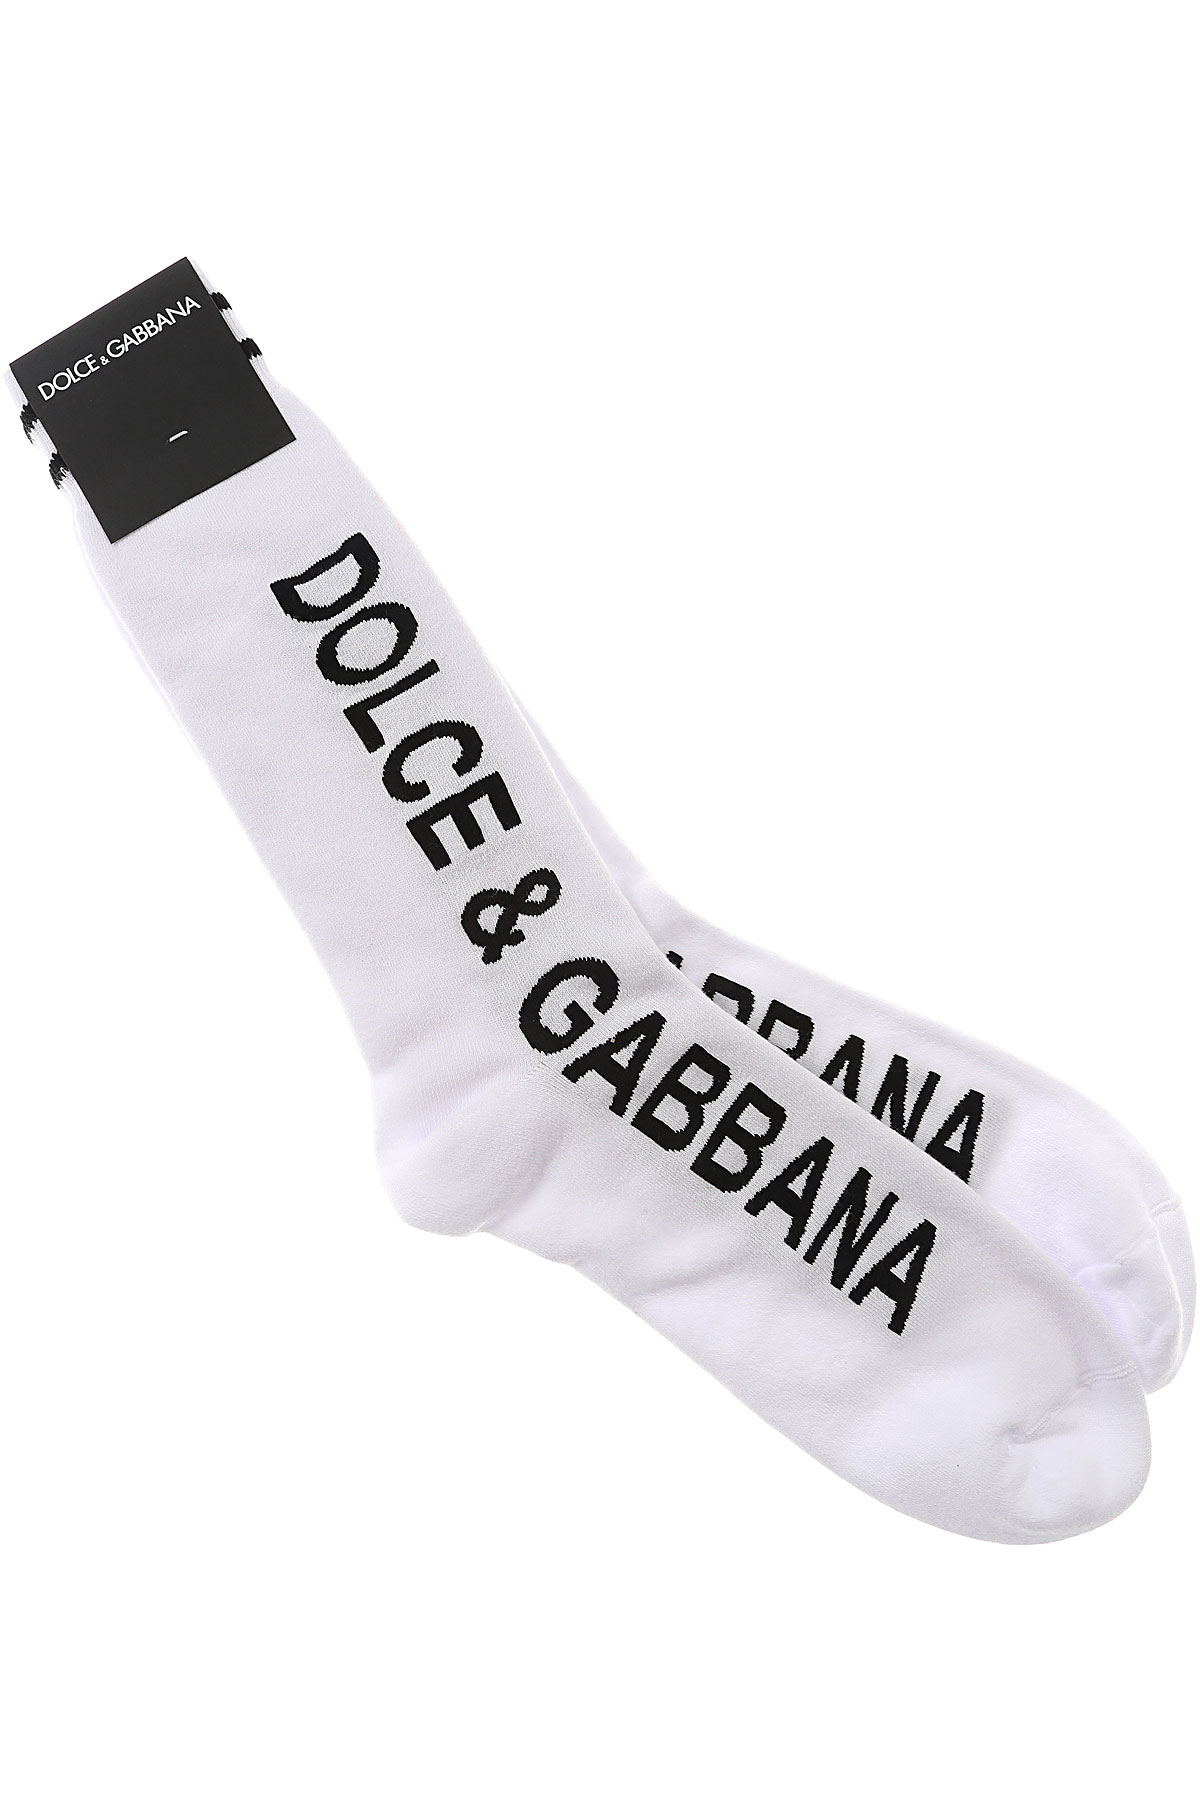 Dolce & Gabbana Chaussette Homme, Blanc, Coton, 2017, L M S